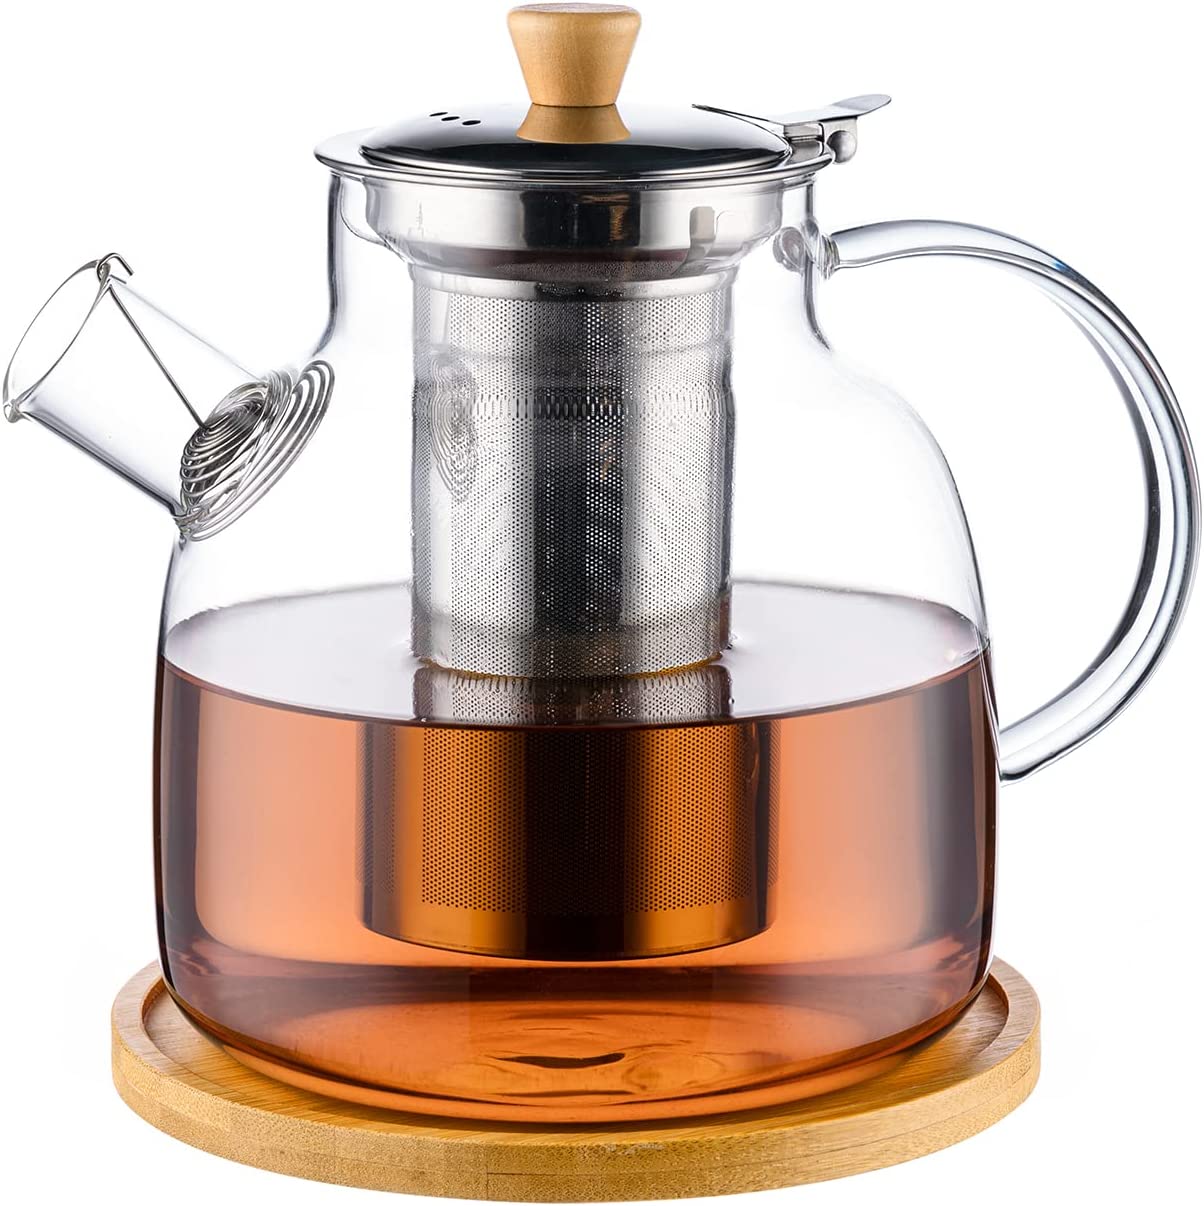 LoFone Teekanne Glas, 1500ml Teekanne mit Siebeinsatz, Teekanne mit Abnehmbare 18/8 Edelstahl-Sieb Rostfrei、Deckel und edlem Holzgriff